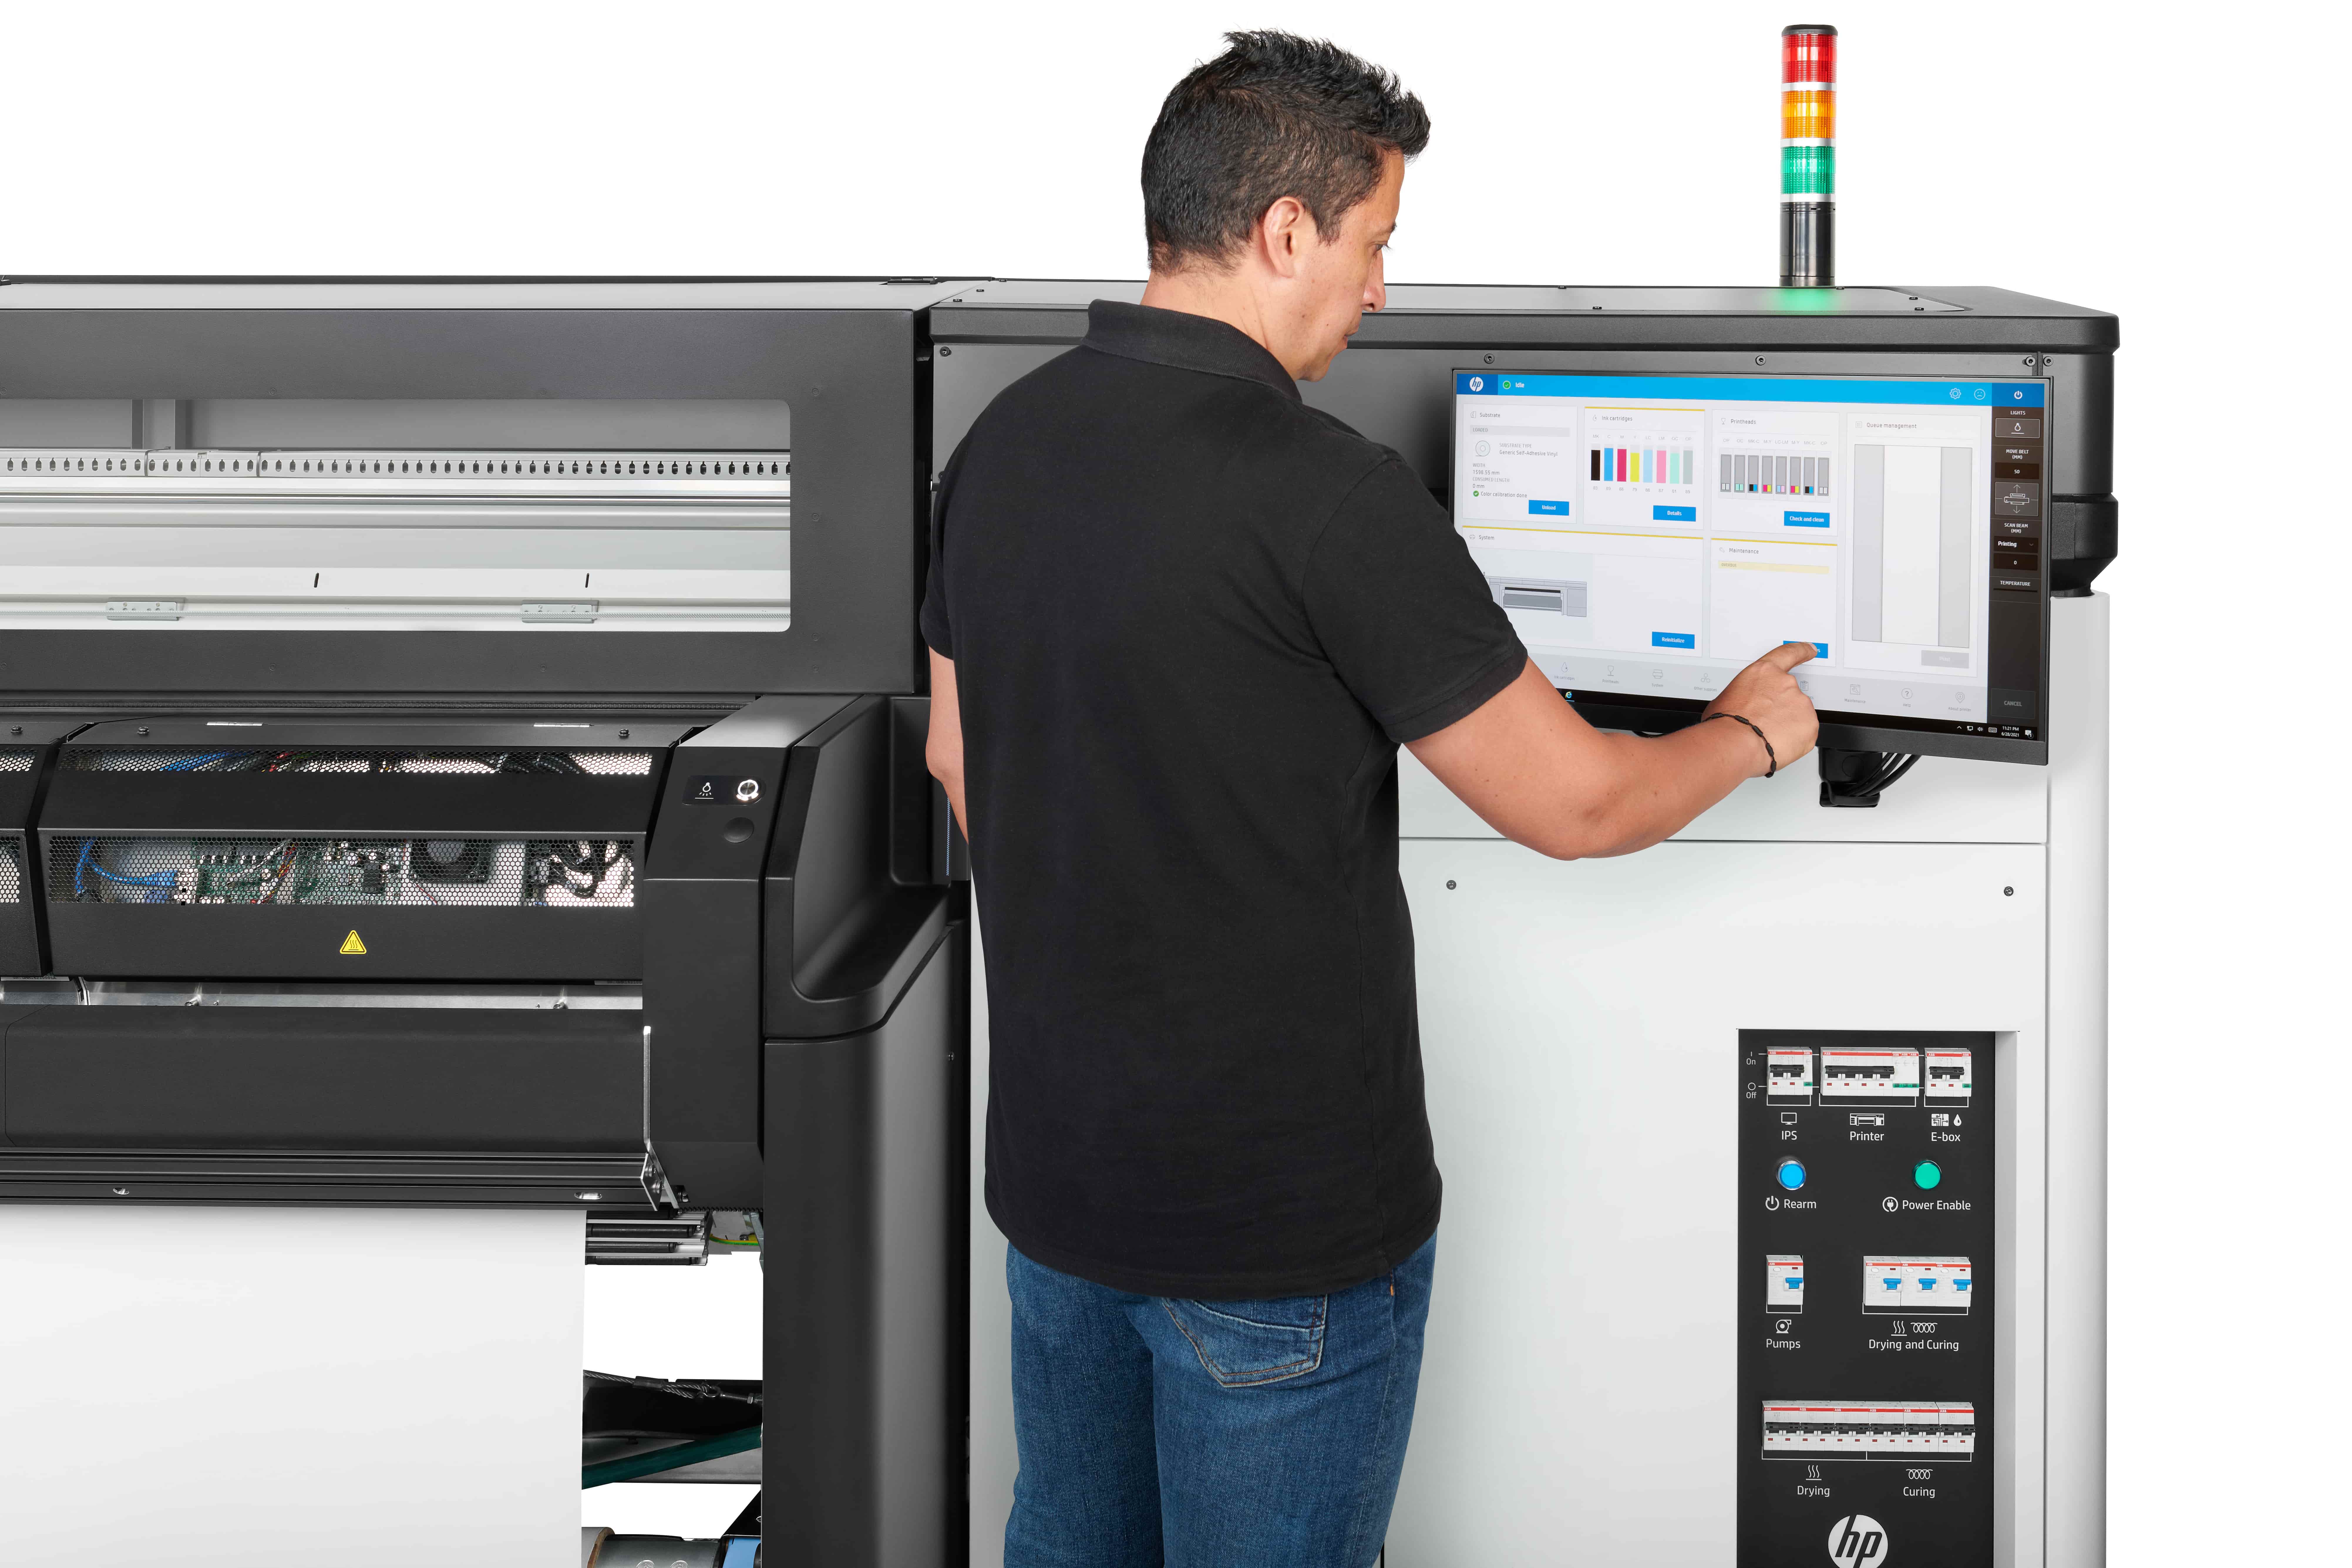 HP Latex 2700 Printer